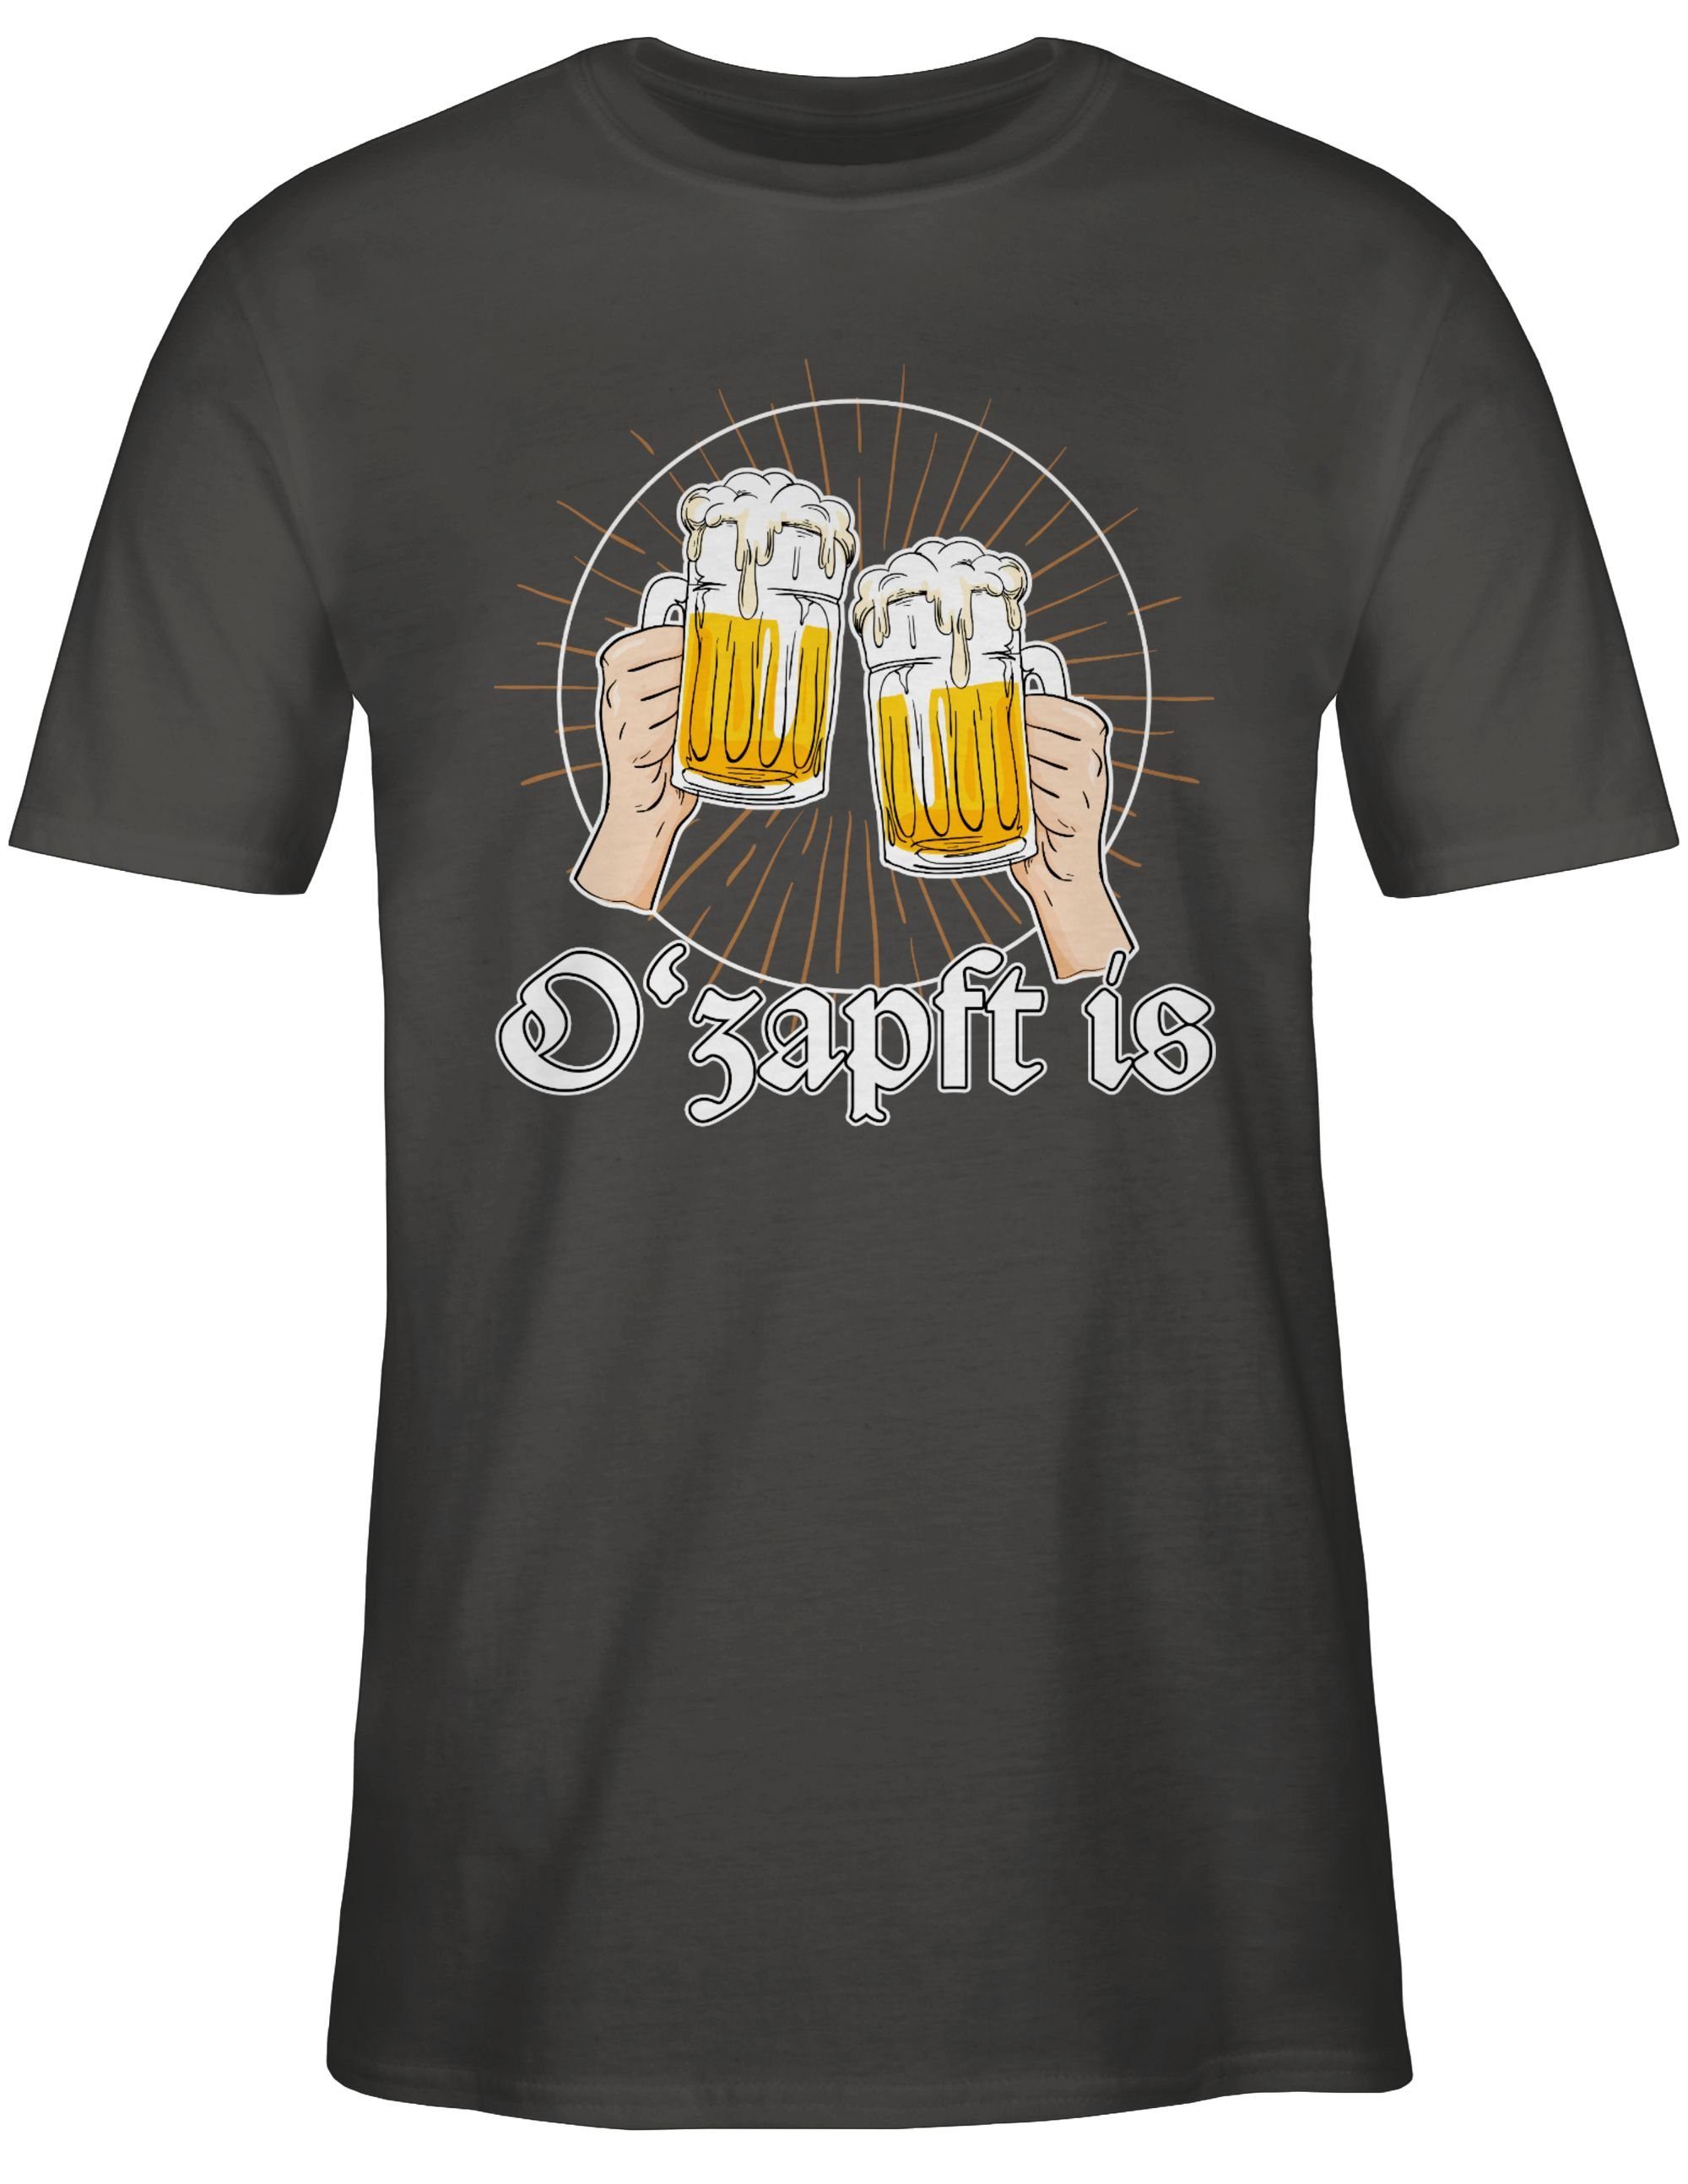 Shirtracer T-Shirt is für Bier O Mode ist O'zapft Zapft Es Dunkelgrau Oktoberfest Herren 02 Anstich angezapft is